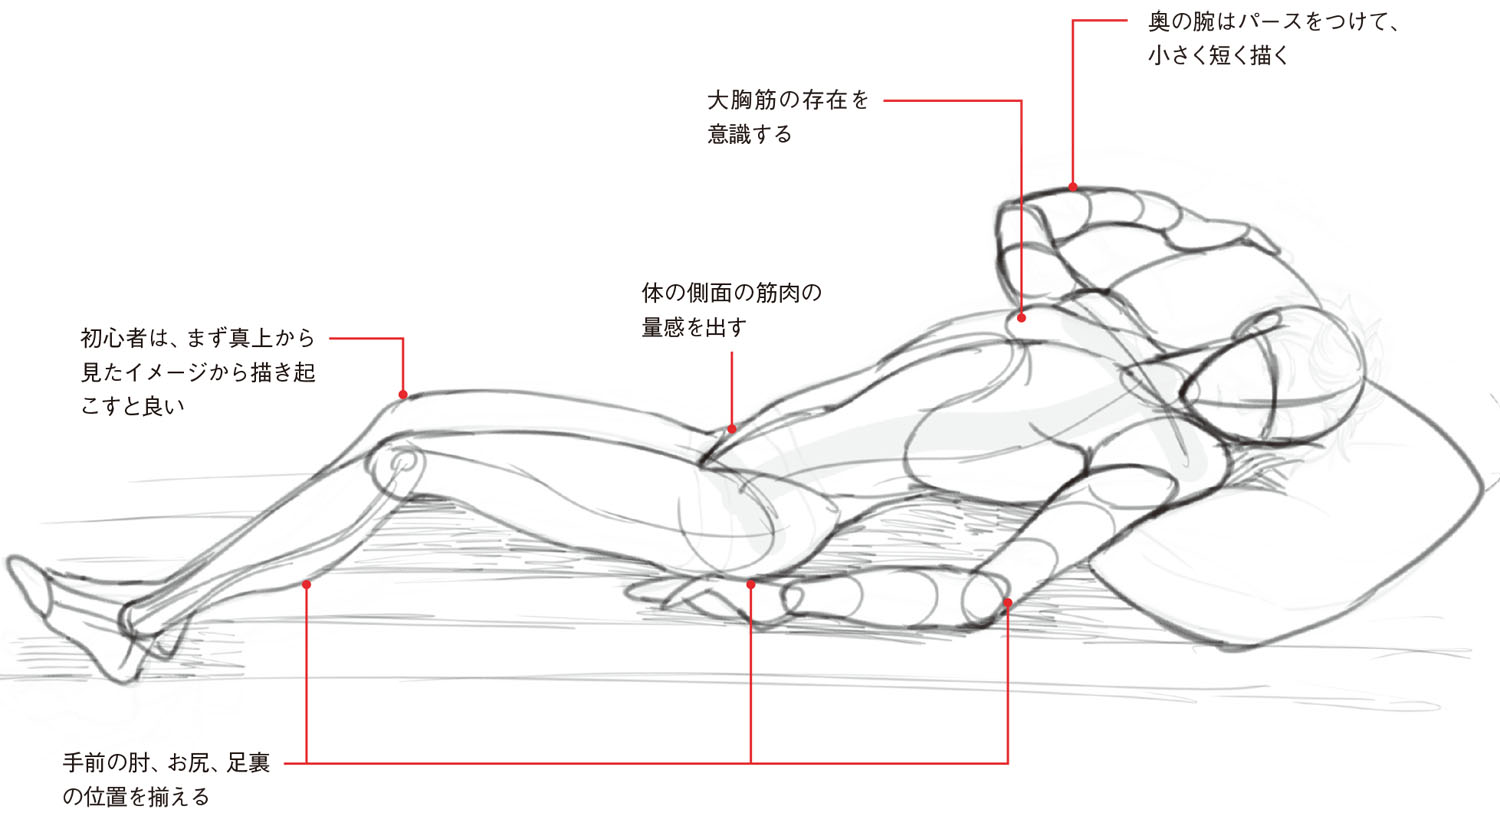 寝ポーズ基本編 男性の 寝姿勢 は直線的 筋肉の量感と動きを意識して描こう 動きのあるポーズの描き方 男性キャラクター編 第6回 Pictures